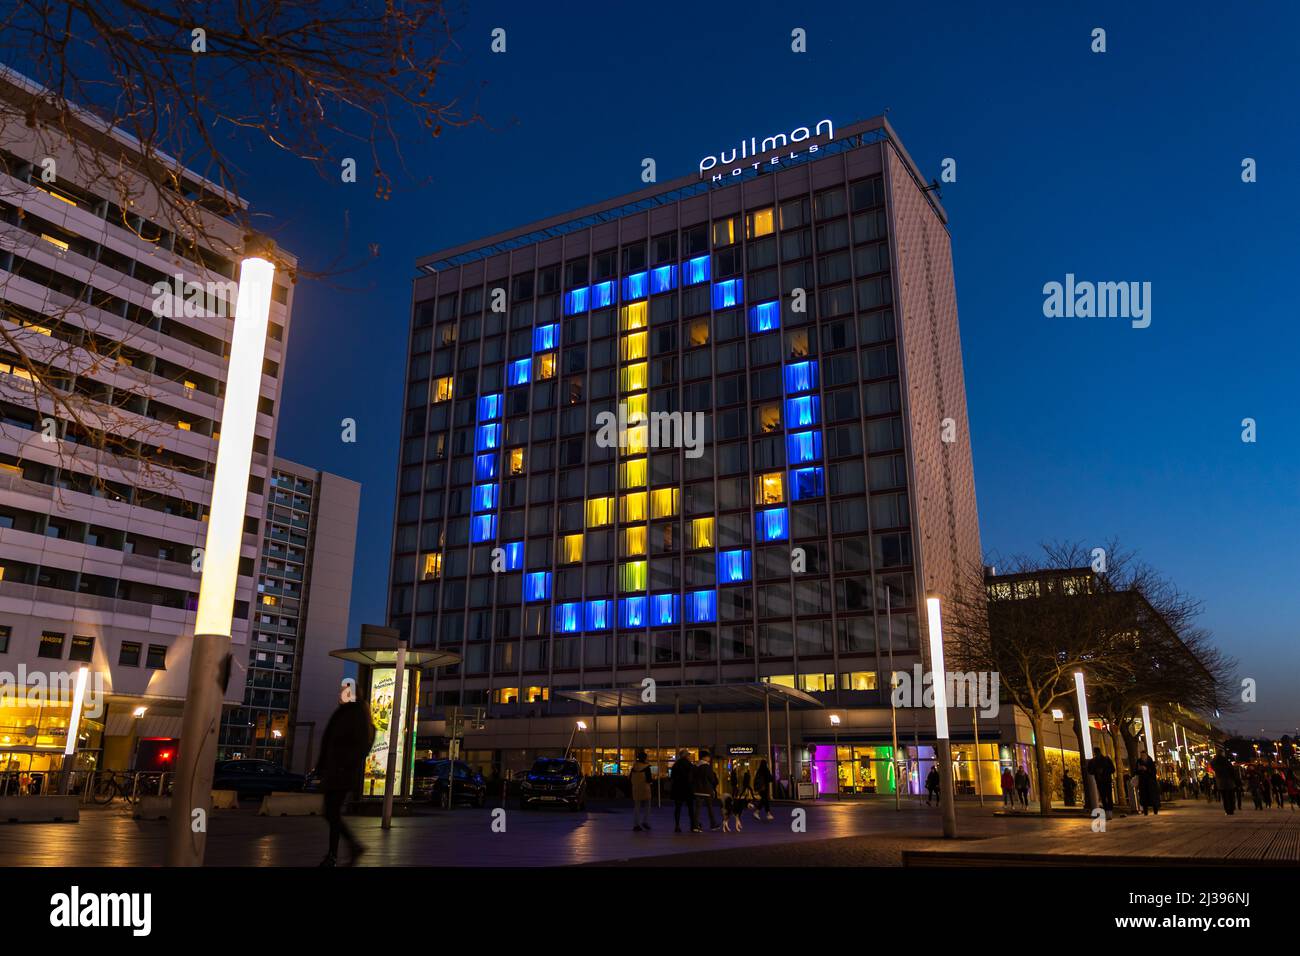 Simbolo di pace nei colori ucraini blu e giallo. Le finestre illuminate dell'hotel Pullman mostrano solidarietà con l'Ucraina durante la guerra. Foto Stock